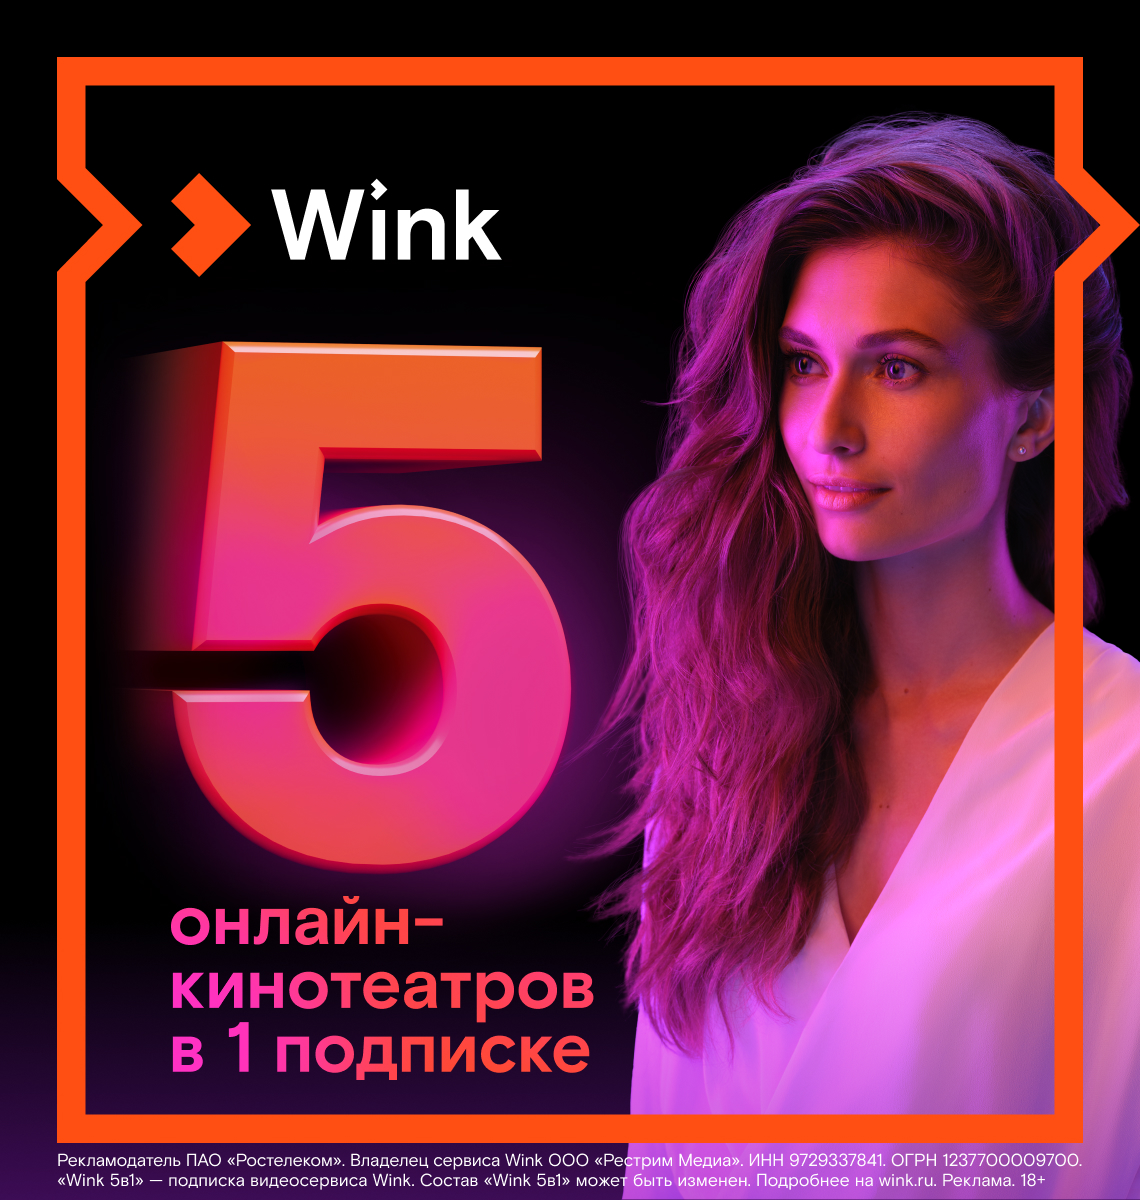 Wink - 5 онлайн-кинотеатров в 1 подписке